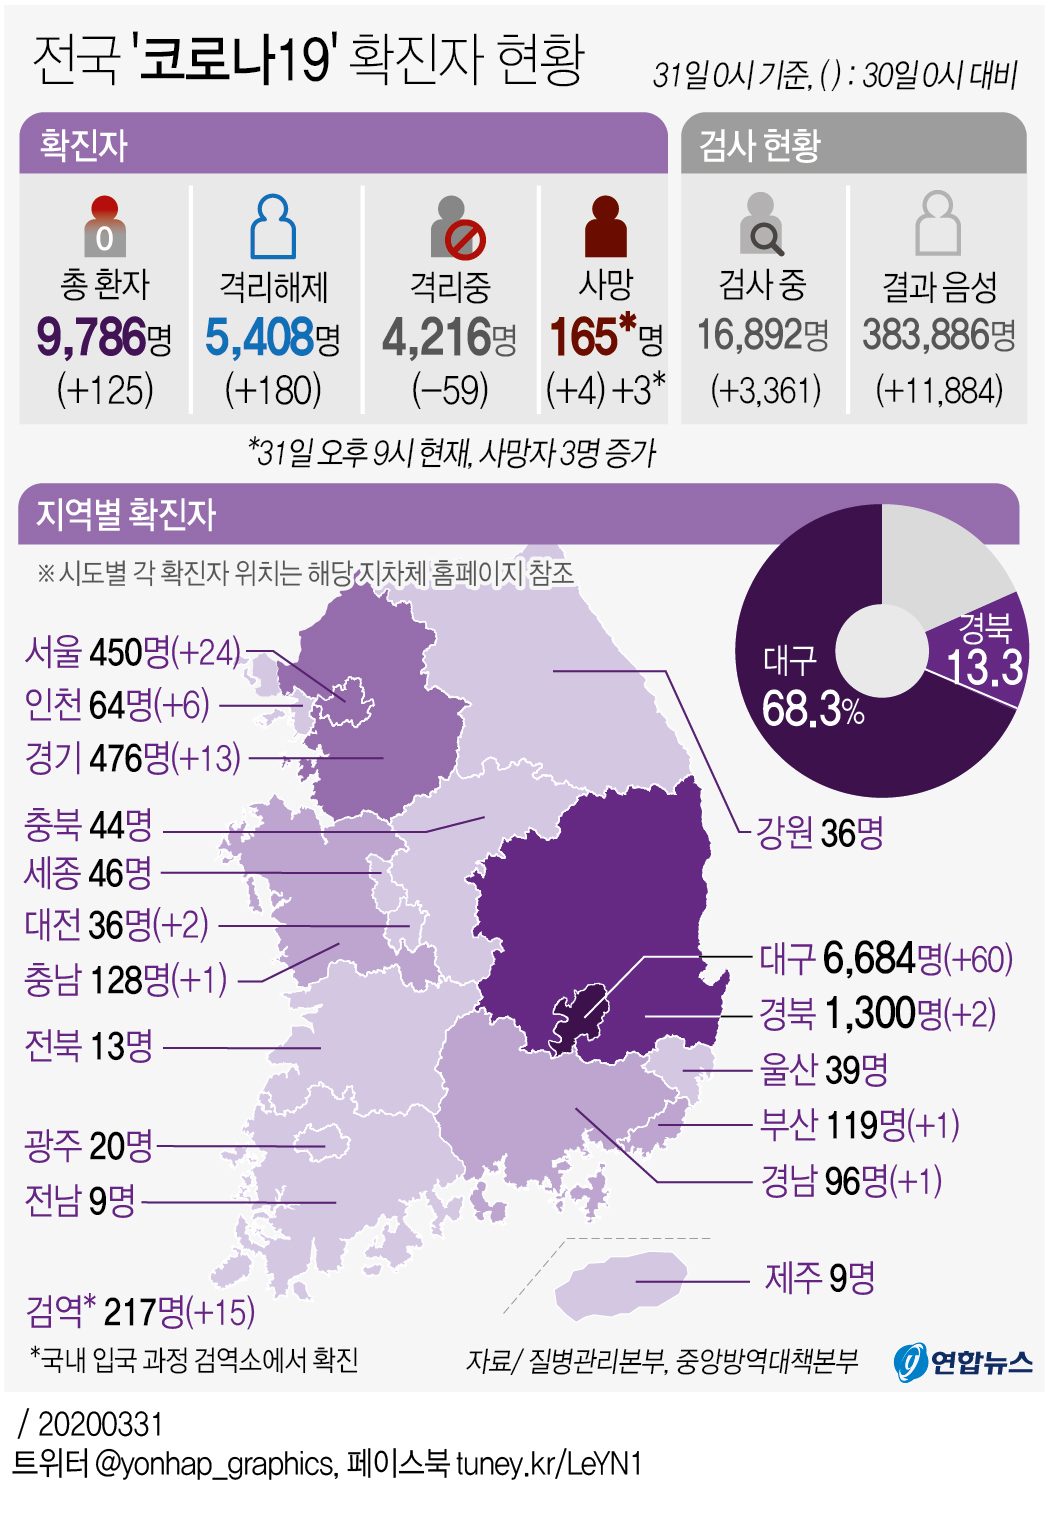 [그래픽] 전국 '코로나19' 확진자 현황(오후 9시 현재)